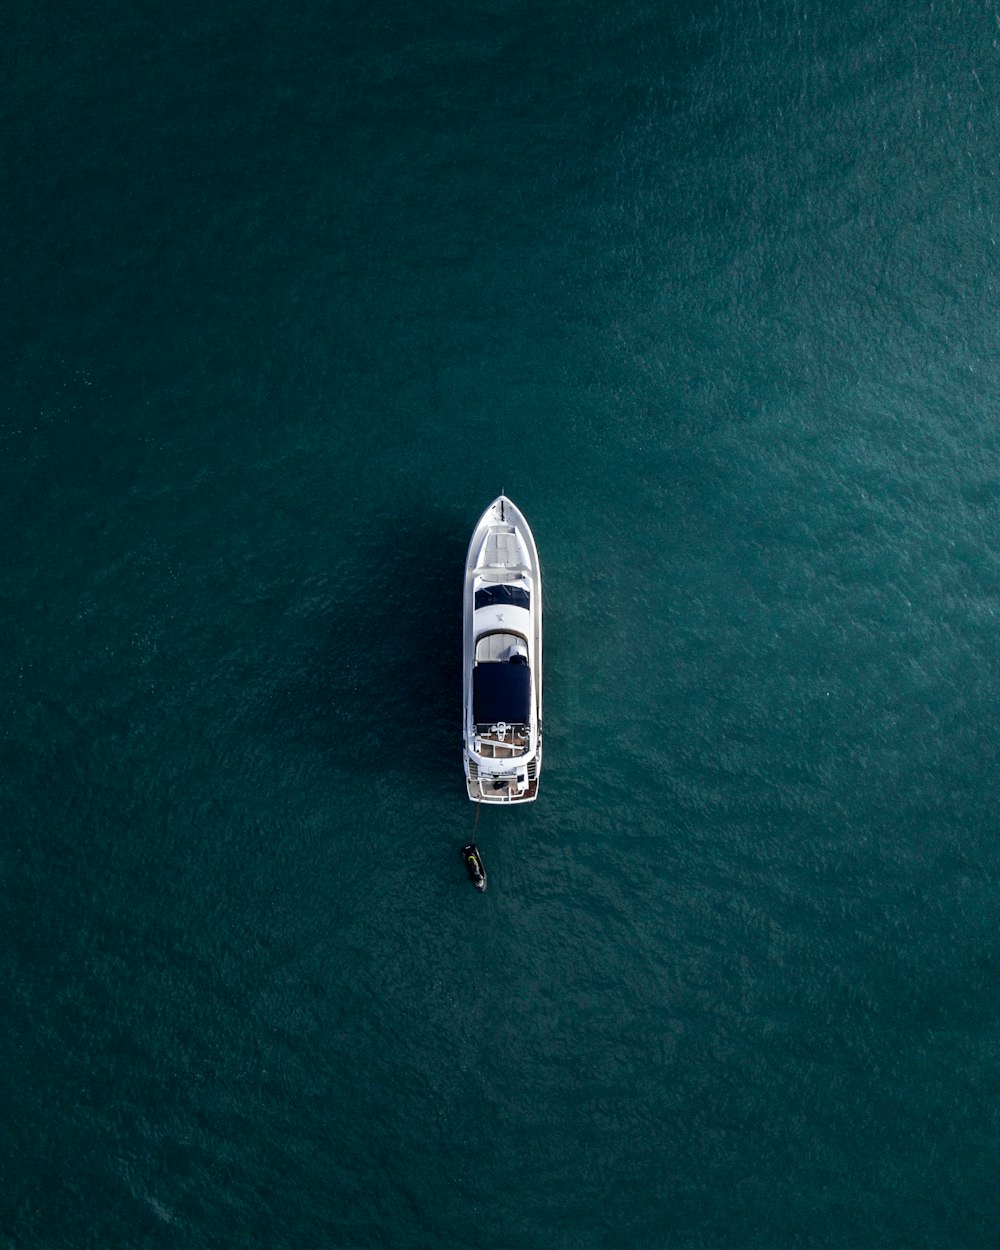 Fotografía aérea de un yate blanco en aguas tranquilas